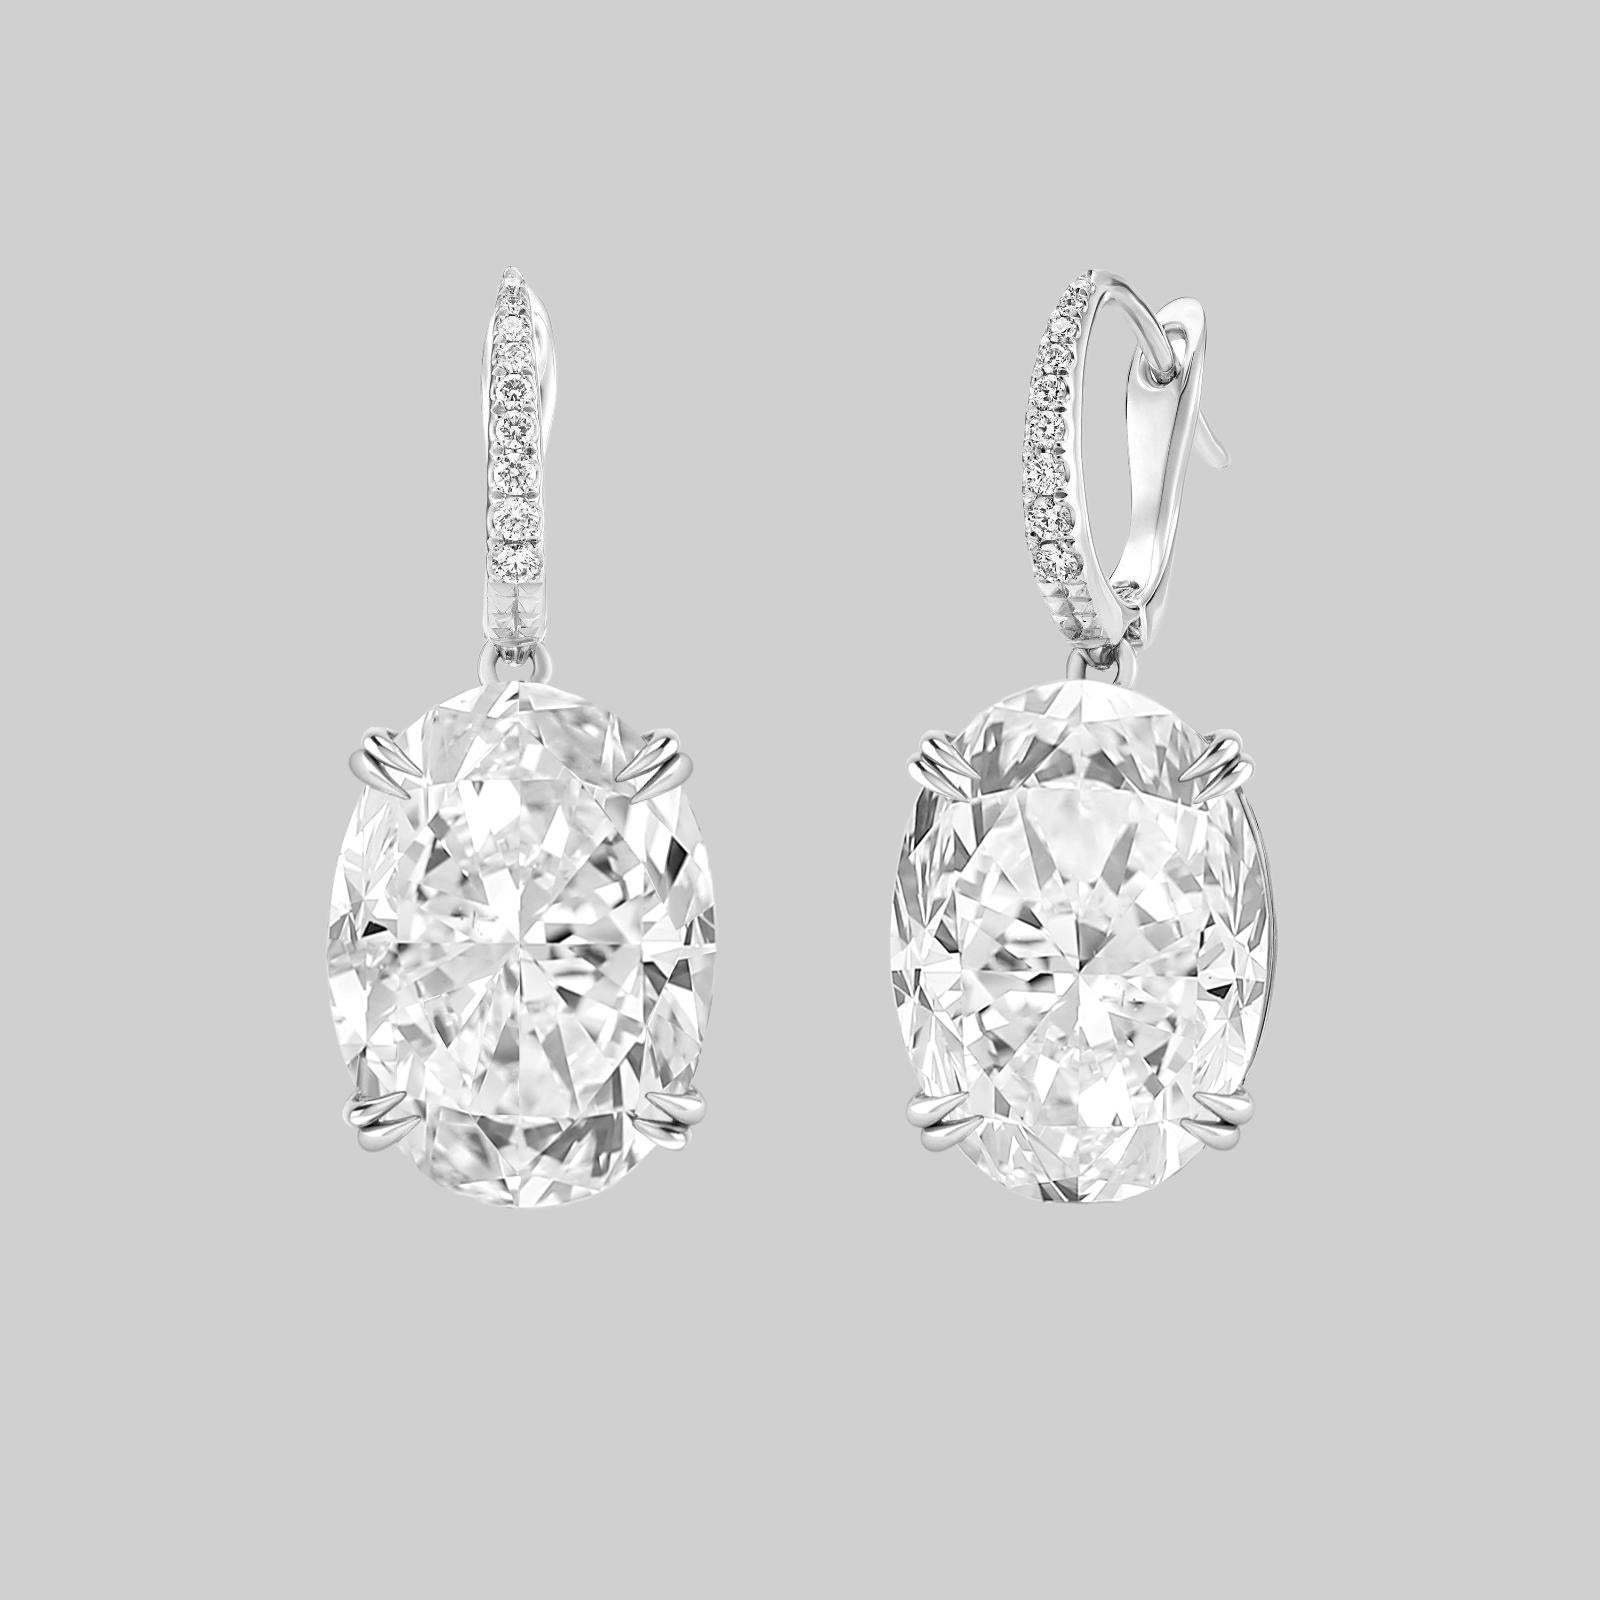 Boucles d'oreilles pendantes en platine avec diamant ovale de 6,61 carats certifié par le GIA.

Réalisées avec un souci du détail inégalé, ces boucles d'oreilles exquises sont un véritable chef-d'œuvre d'élégance et de raffinement. Chaque boucle